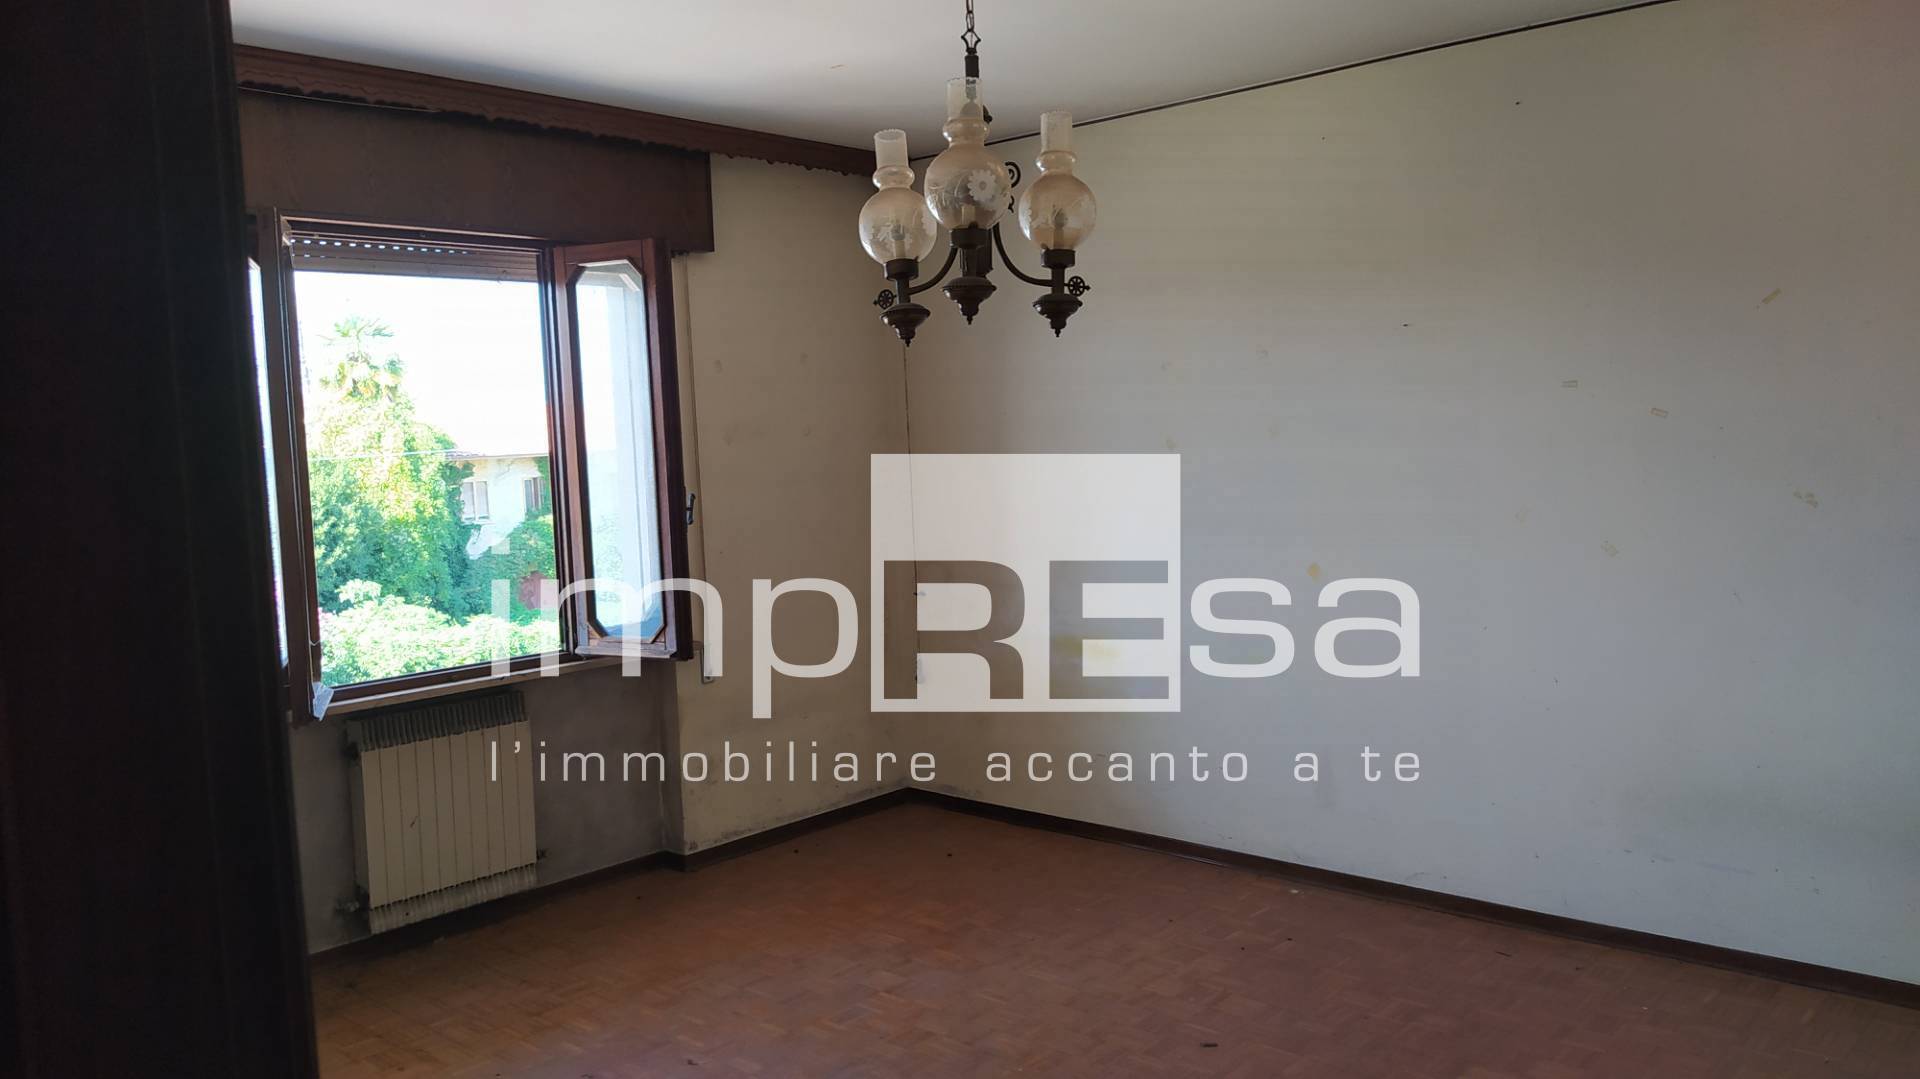 Appartamento in vendita a Cimadolmo, 3 locali, prezzo € 210.000 | PortaleAgenzieImmobiliari.it